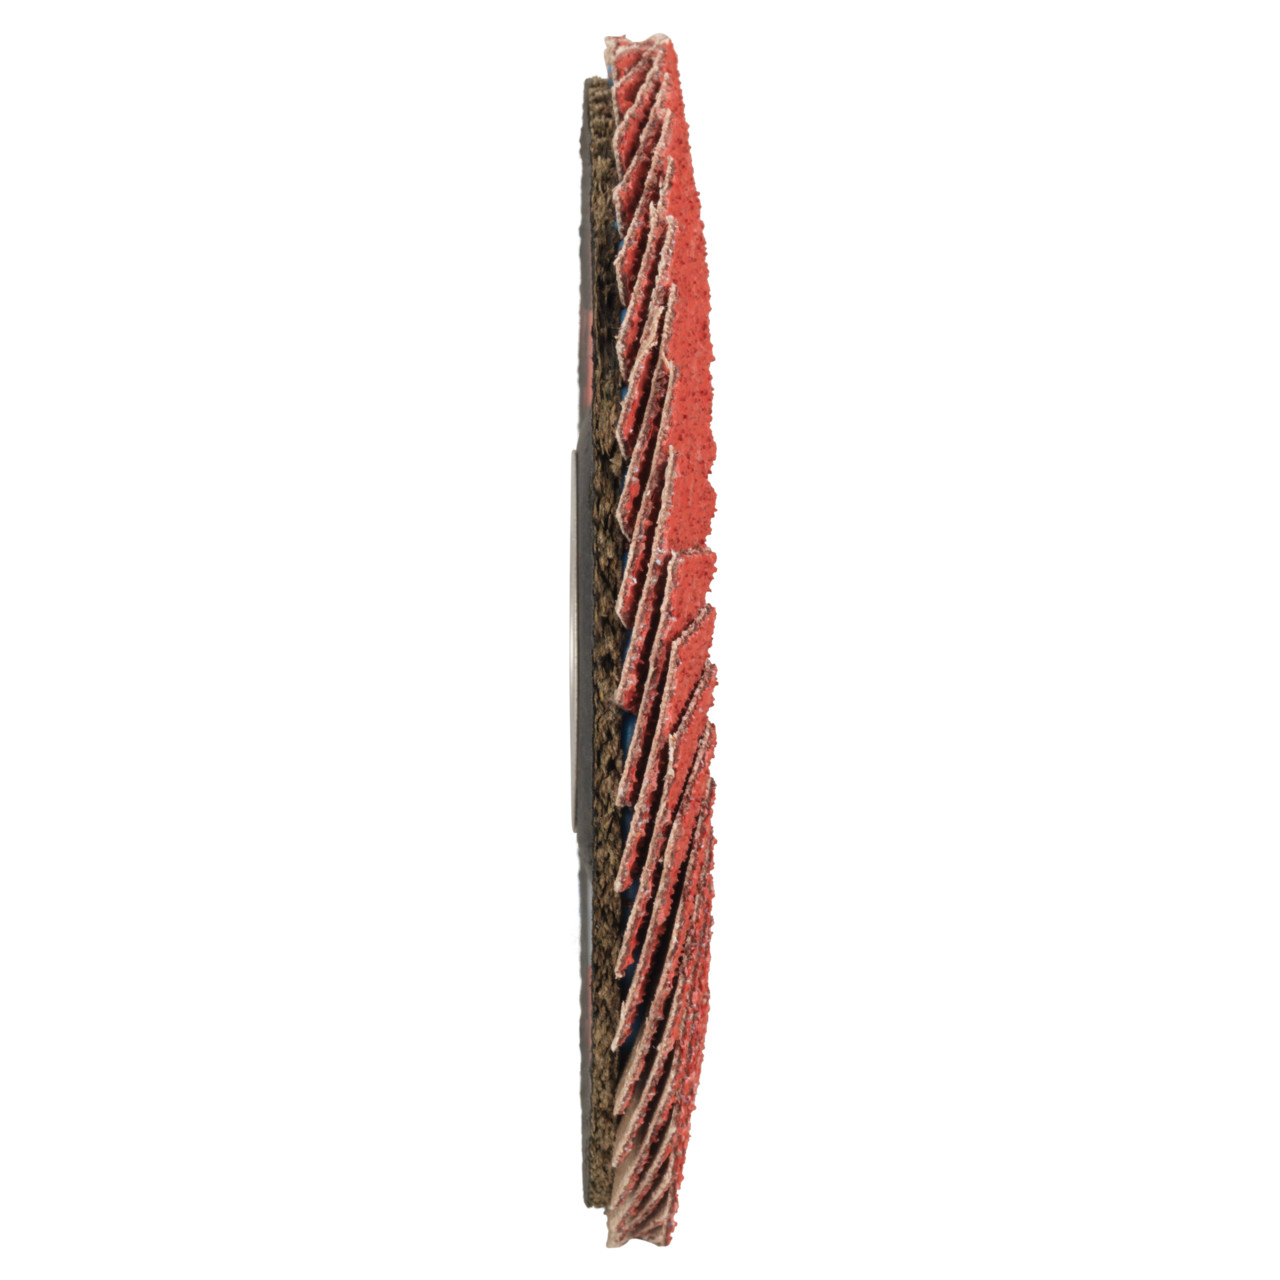 Tyrolit Rondelle éventail DxH 115x22,23 CERAMIC pour acier inoxydable, P40, Forme : 28A - modèle droit (modèle à corps en fibre de verre), Art. 719797